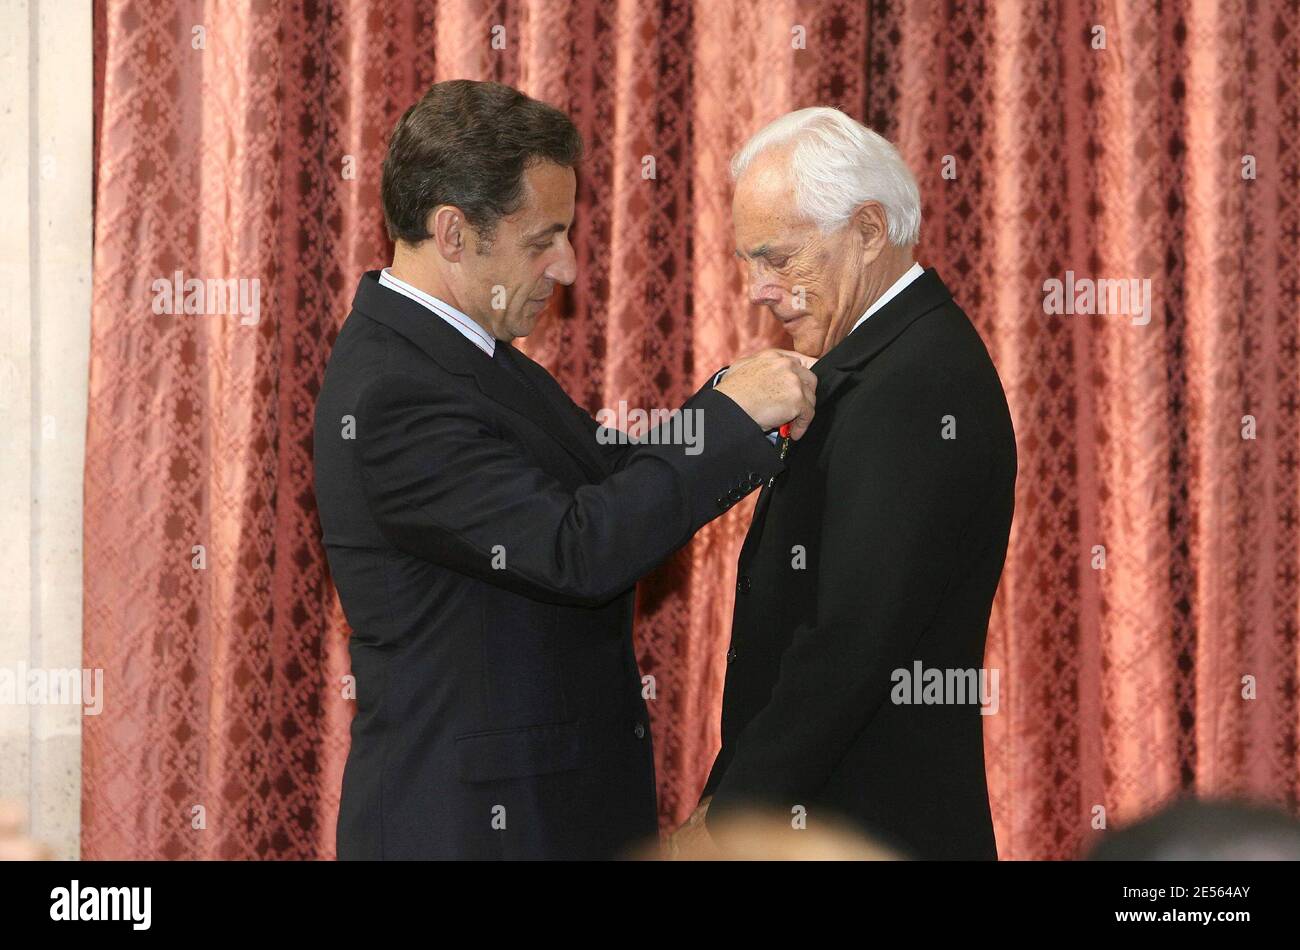 Der französische Präsident Nicolas Sarkozy verleiht dem italienischen Designer Giorgio Armani am 3. Juli 2008 im Elysee-Palast in Paris, Frankreich, die Legion d'Honneur. Die Legion d'Honneur ist Frankreichs höchste Auszeichnung für herausragende Leistungen. Foto von Pool/Villard-Lorenvu/ABACAPRESS.COM Stockfoto